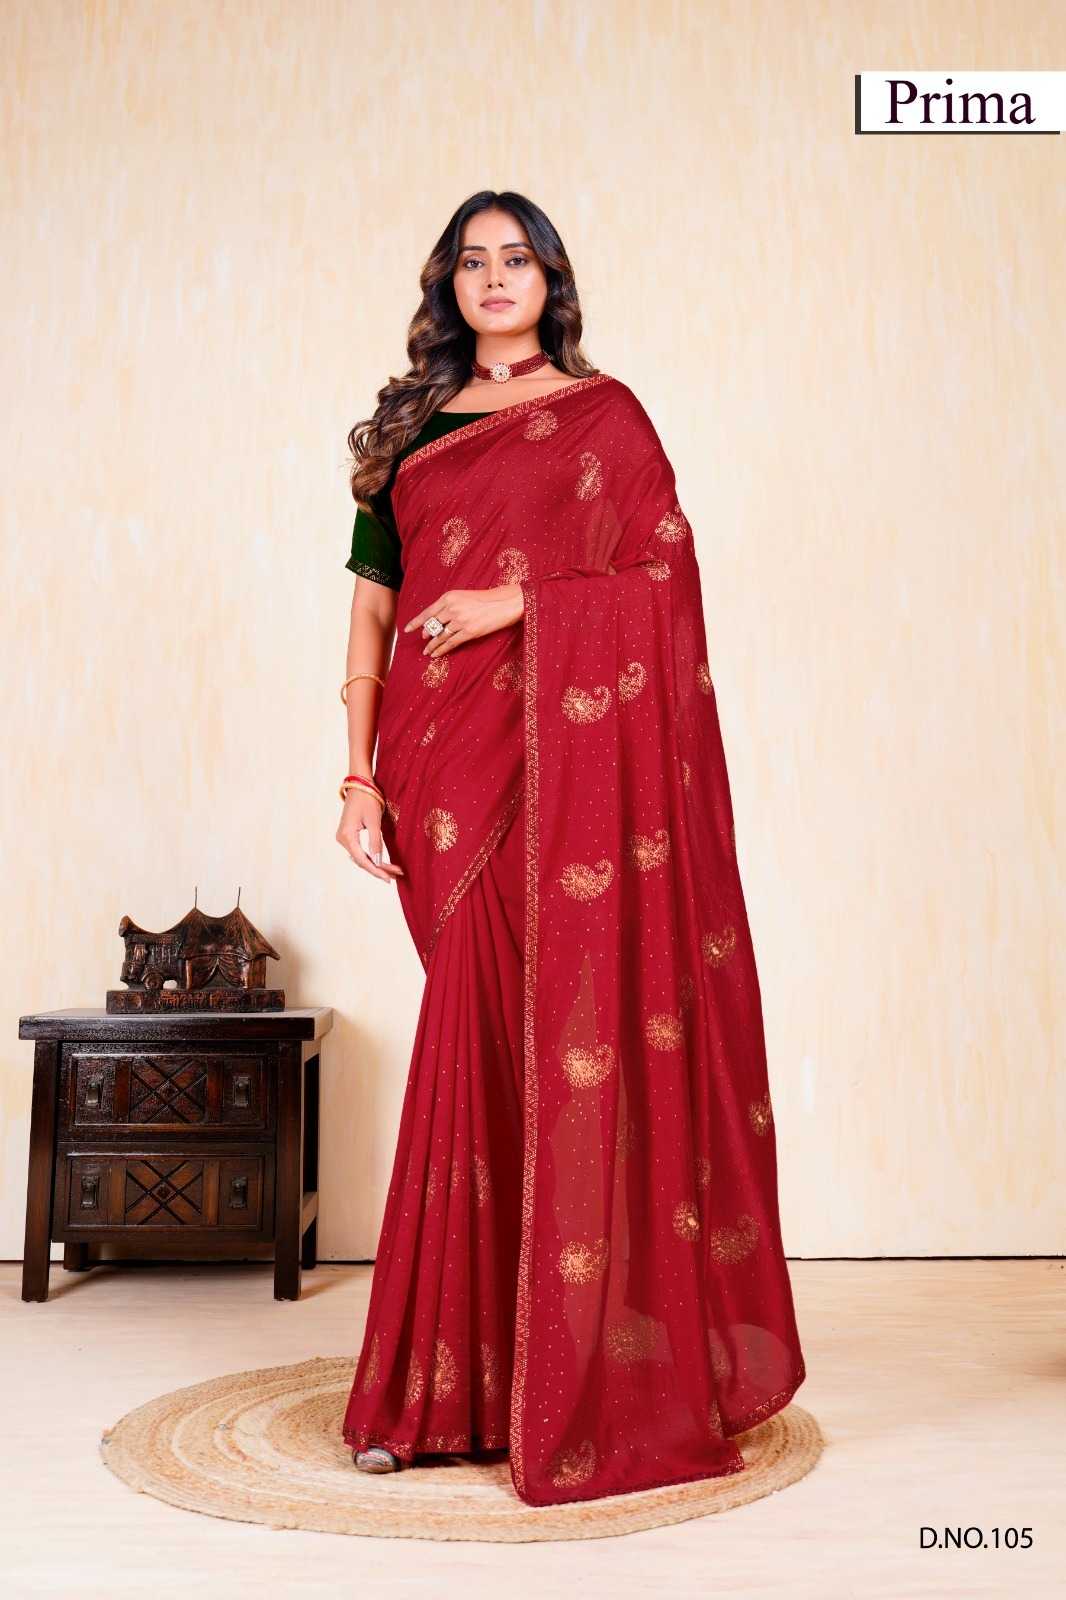 prima 101-105 fancy vichitra exclusive design party wear saree exports 